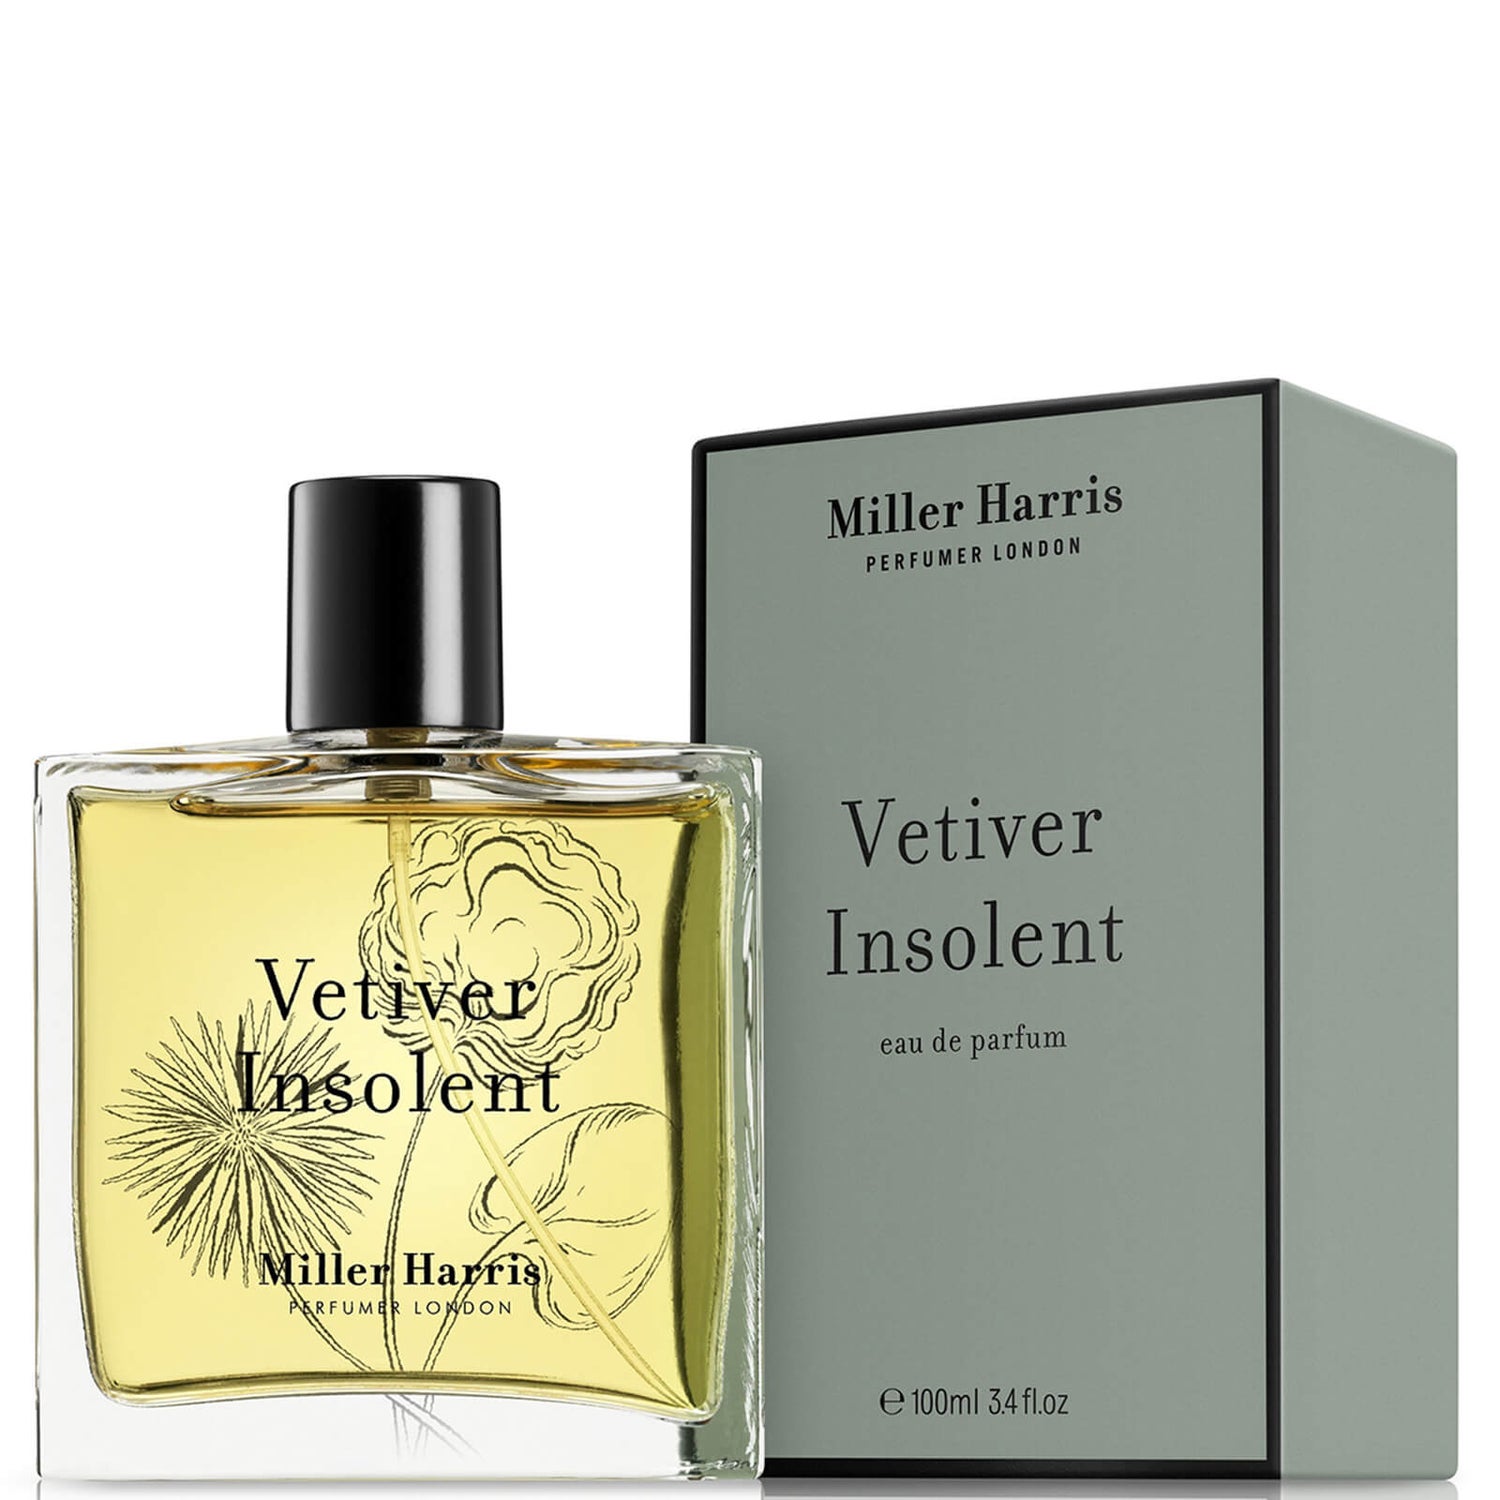 Miller Harris Vetiver Insolent Eau de Parfum 100ml